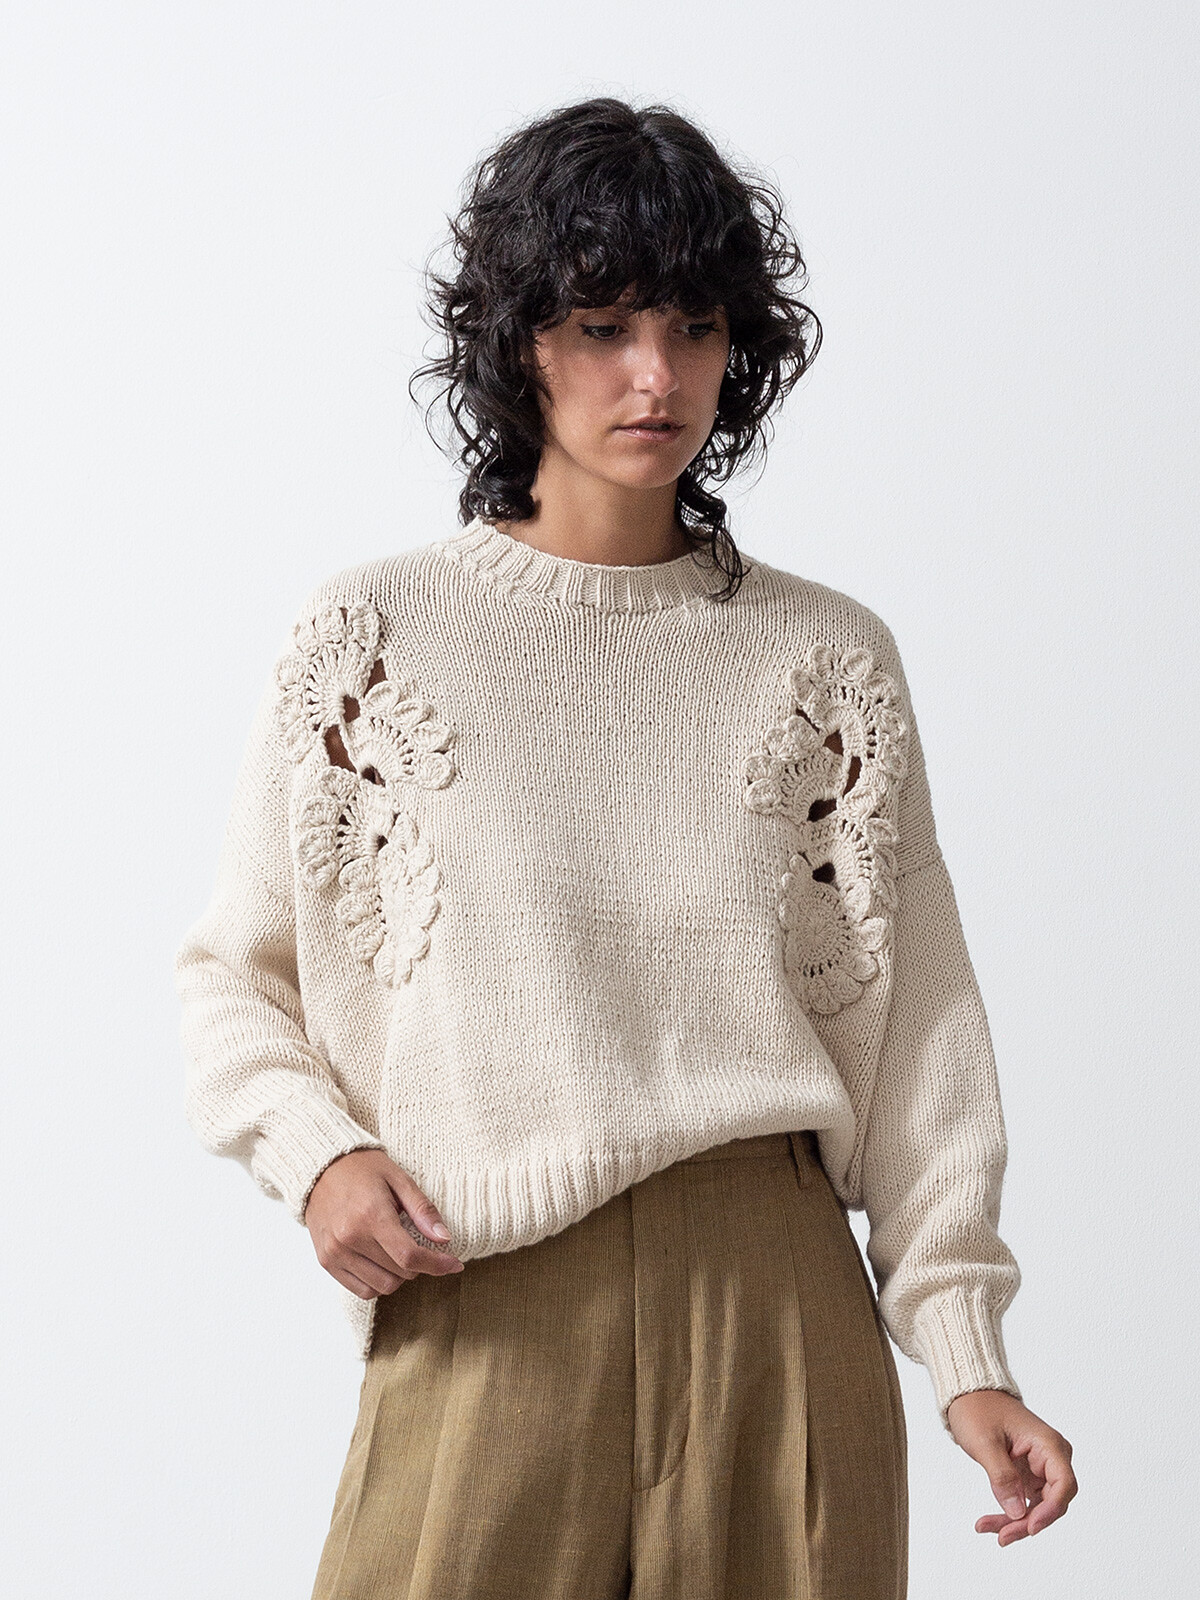 Mending crochet sweater Image